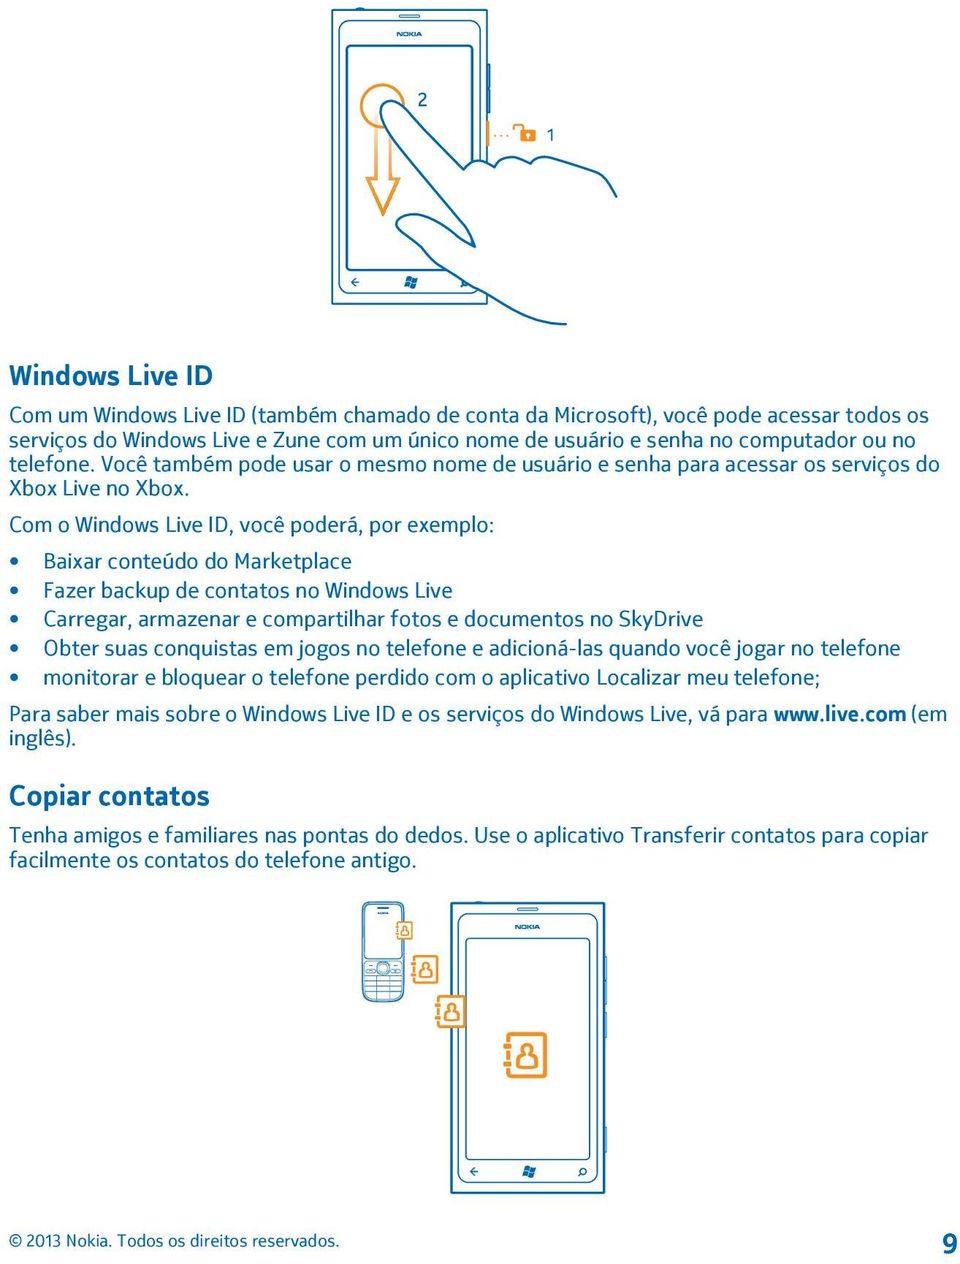 Com o Windows Live ID, você poderá, por exemplo: Baixar conteúdo do Marketplace Fazer backup de contatos no Windows Live Carregar, armazenar e compartilhar fotos e documentos no SkyDrive Obter suas